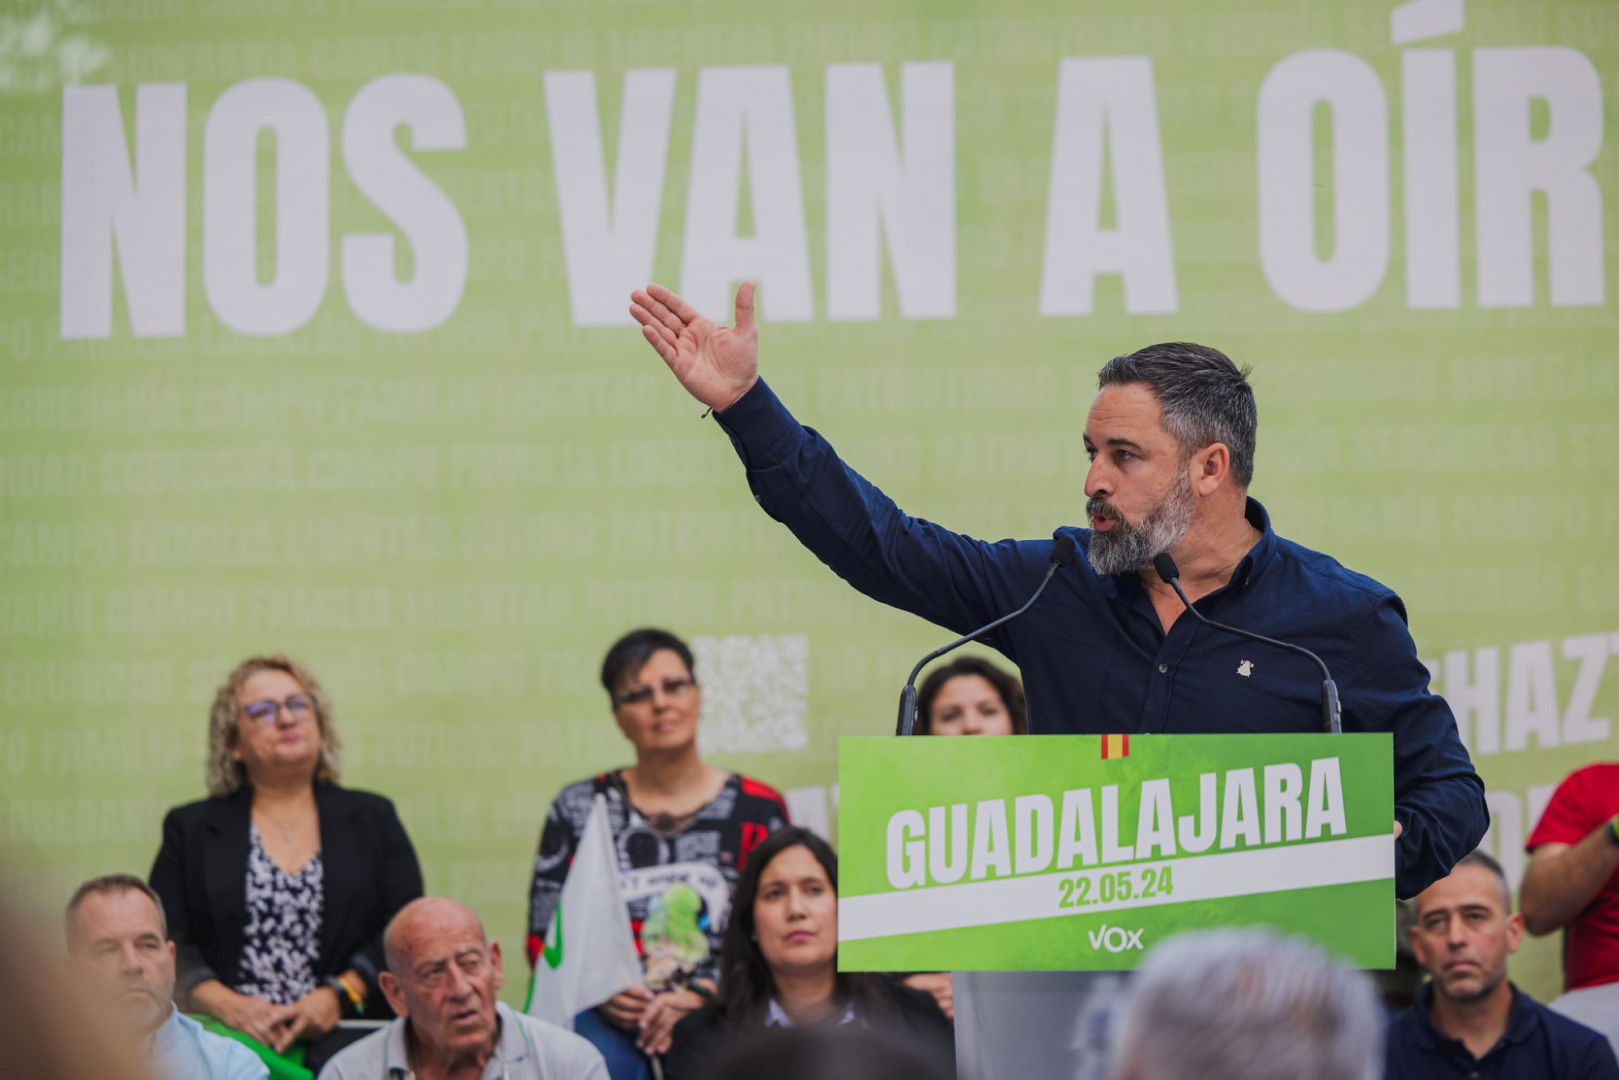 Santoago Abascal durante el acto de precampaña celebrado ayer en Guadalajara//Imagen: Vox España.